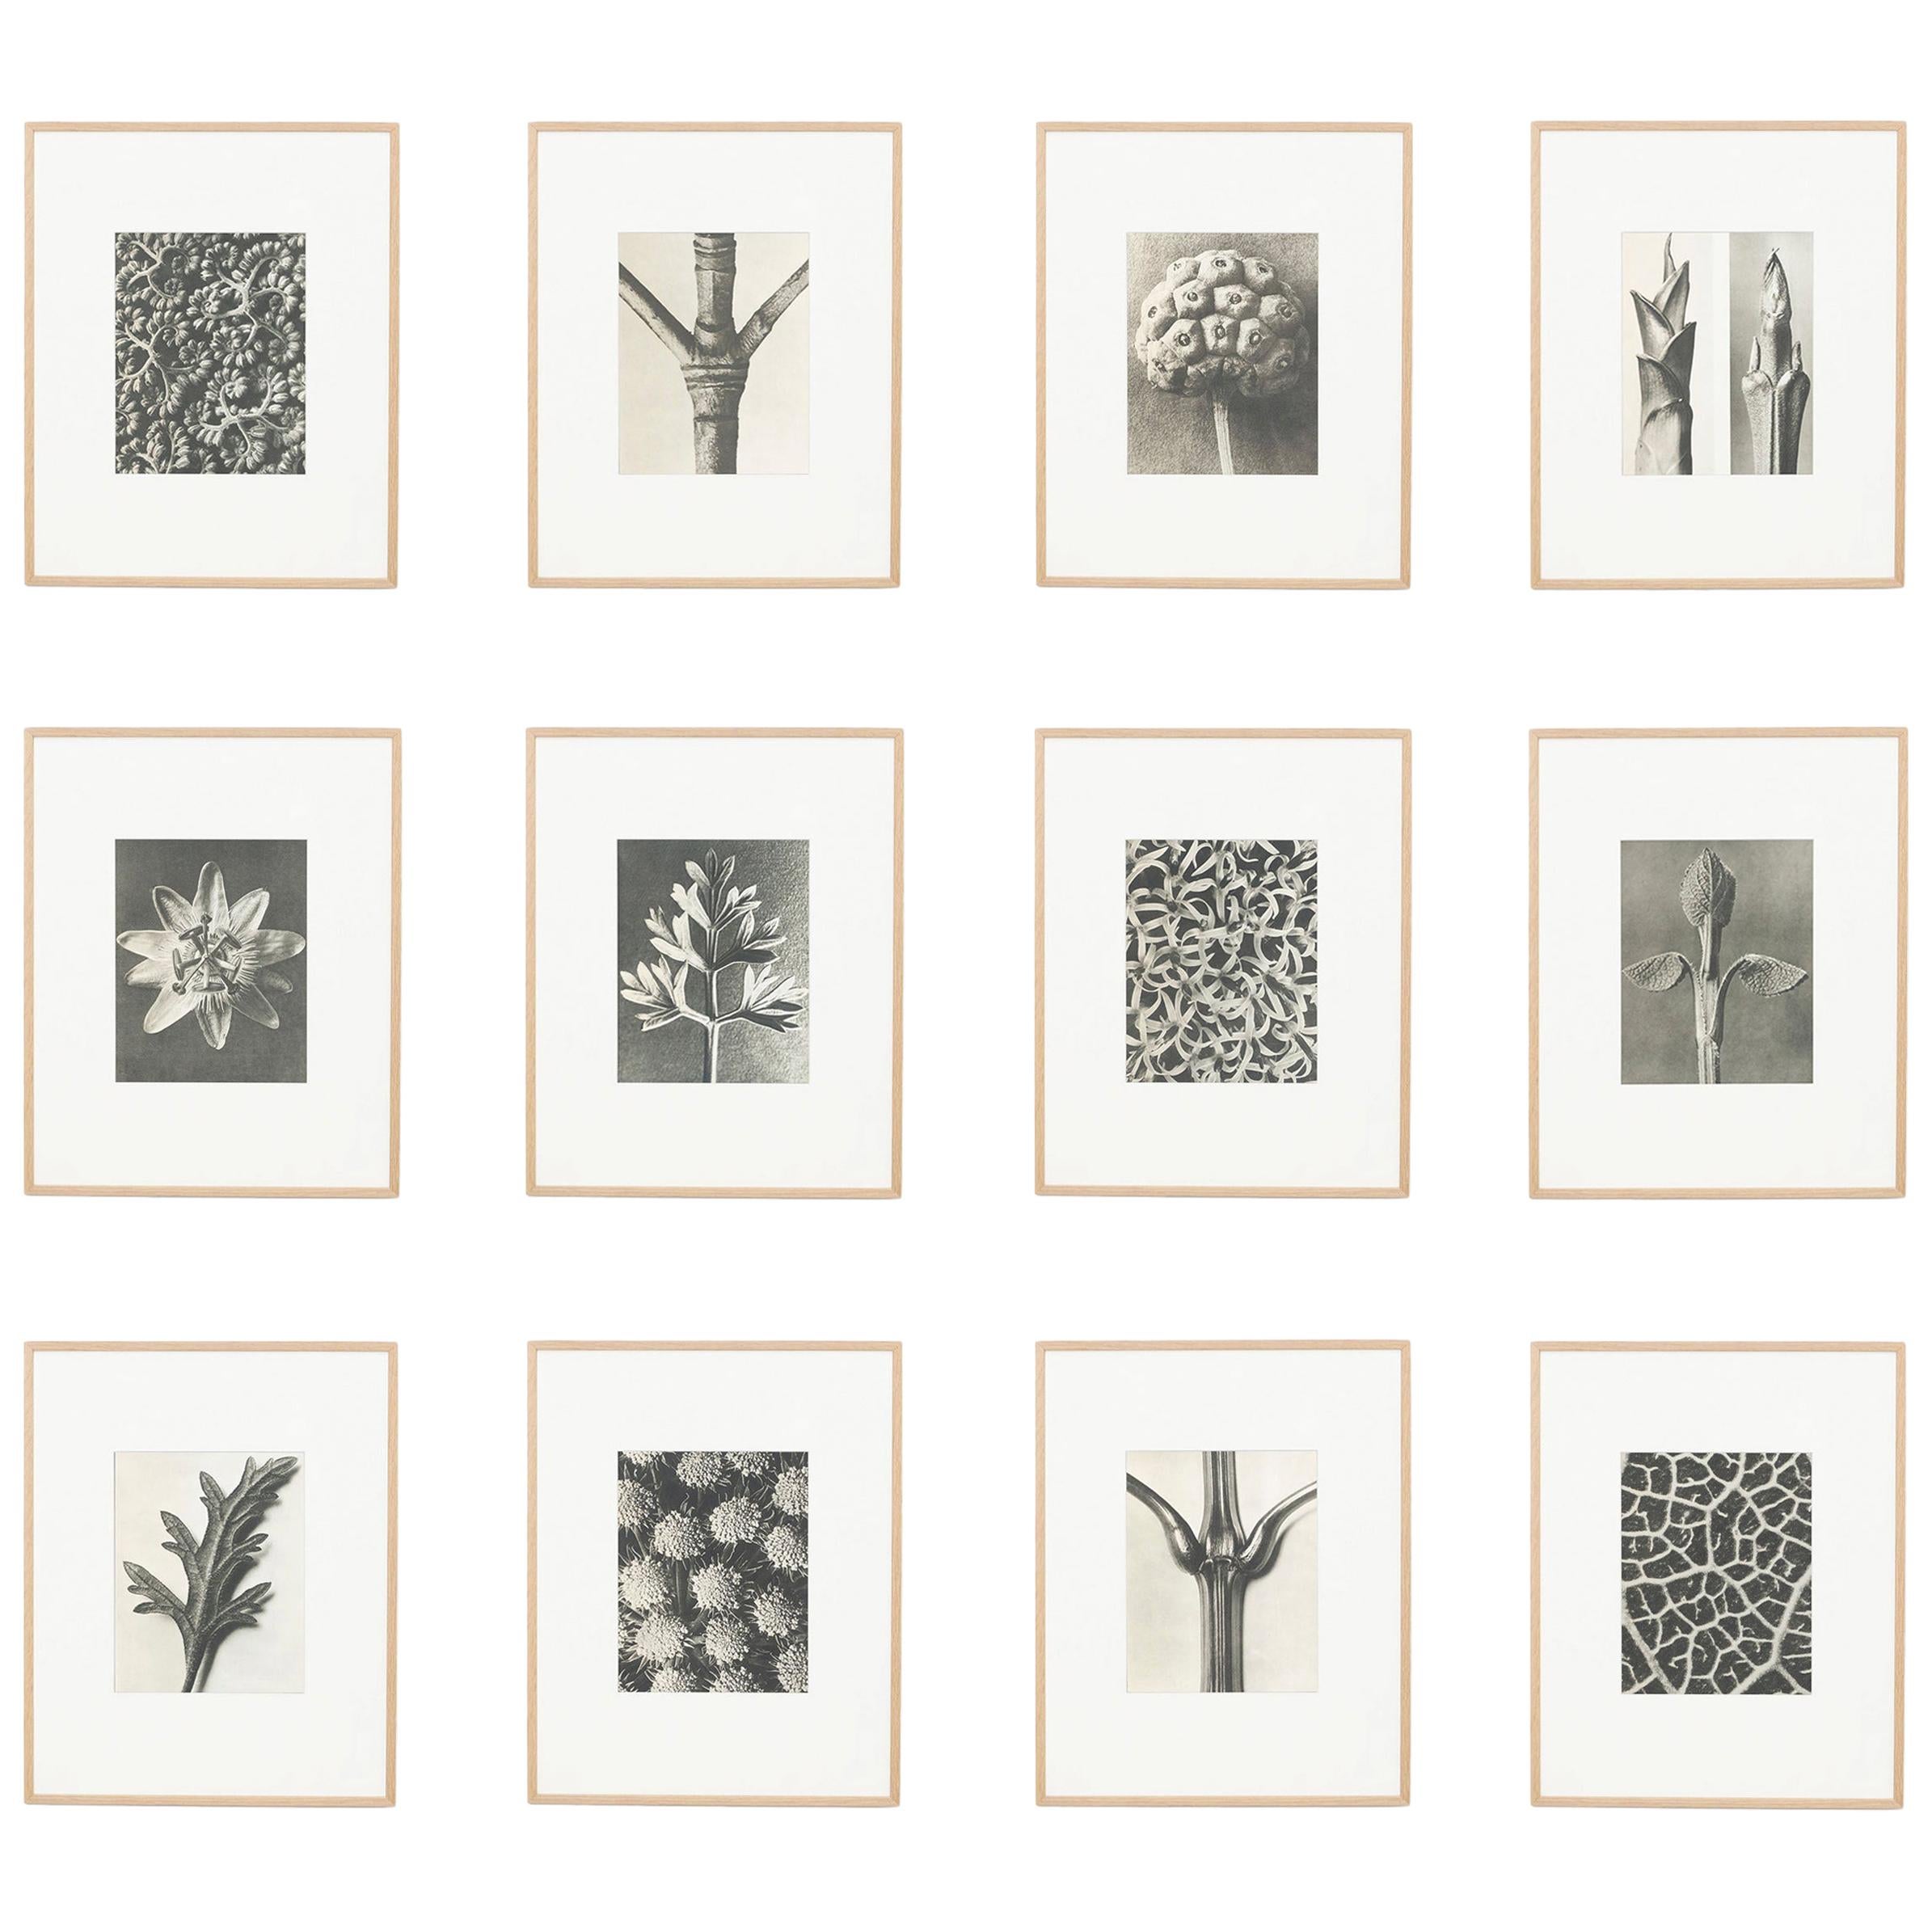 Set von zwölf Karl Blossfeldt-Fotogravuren in Schwarz-Weiß, botanische Fotografie, 1942